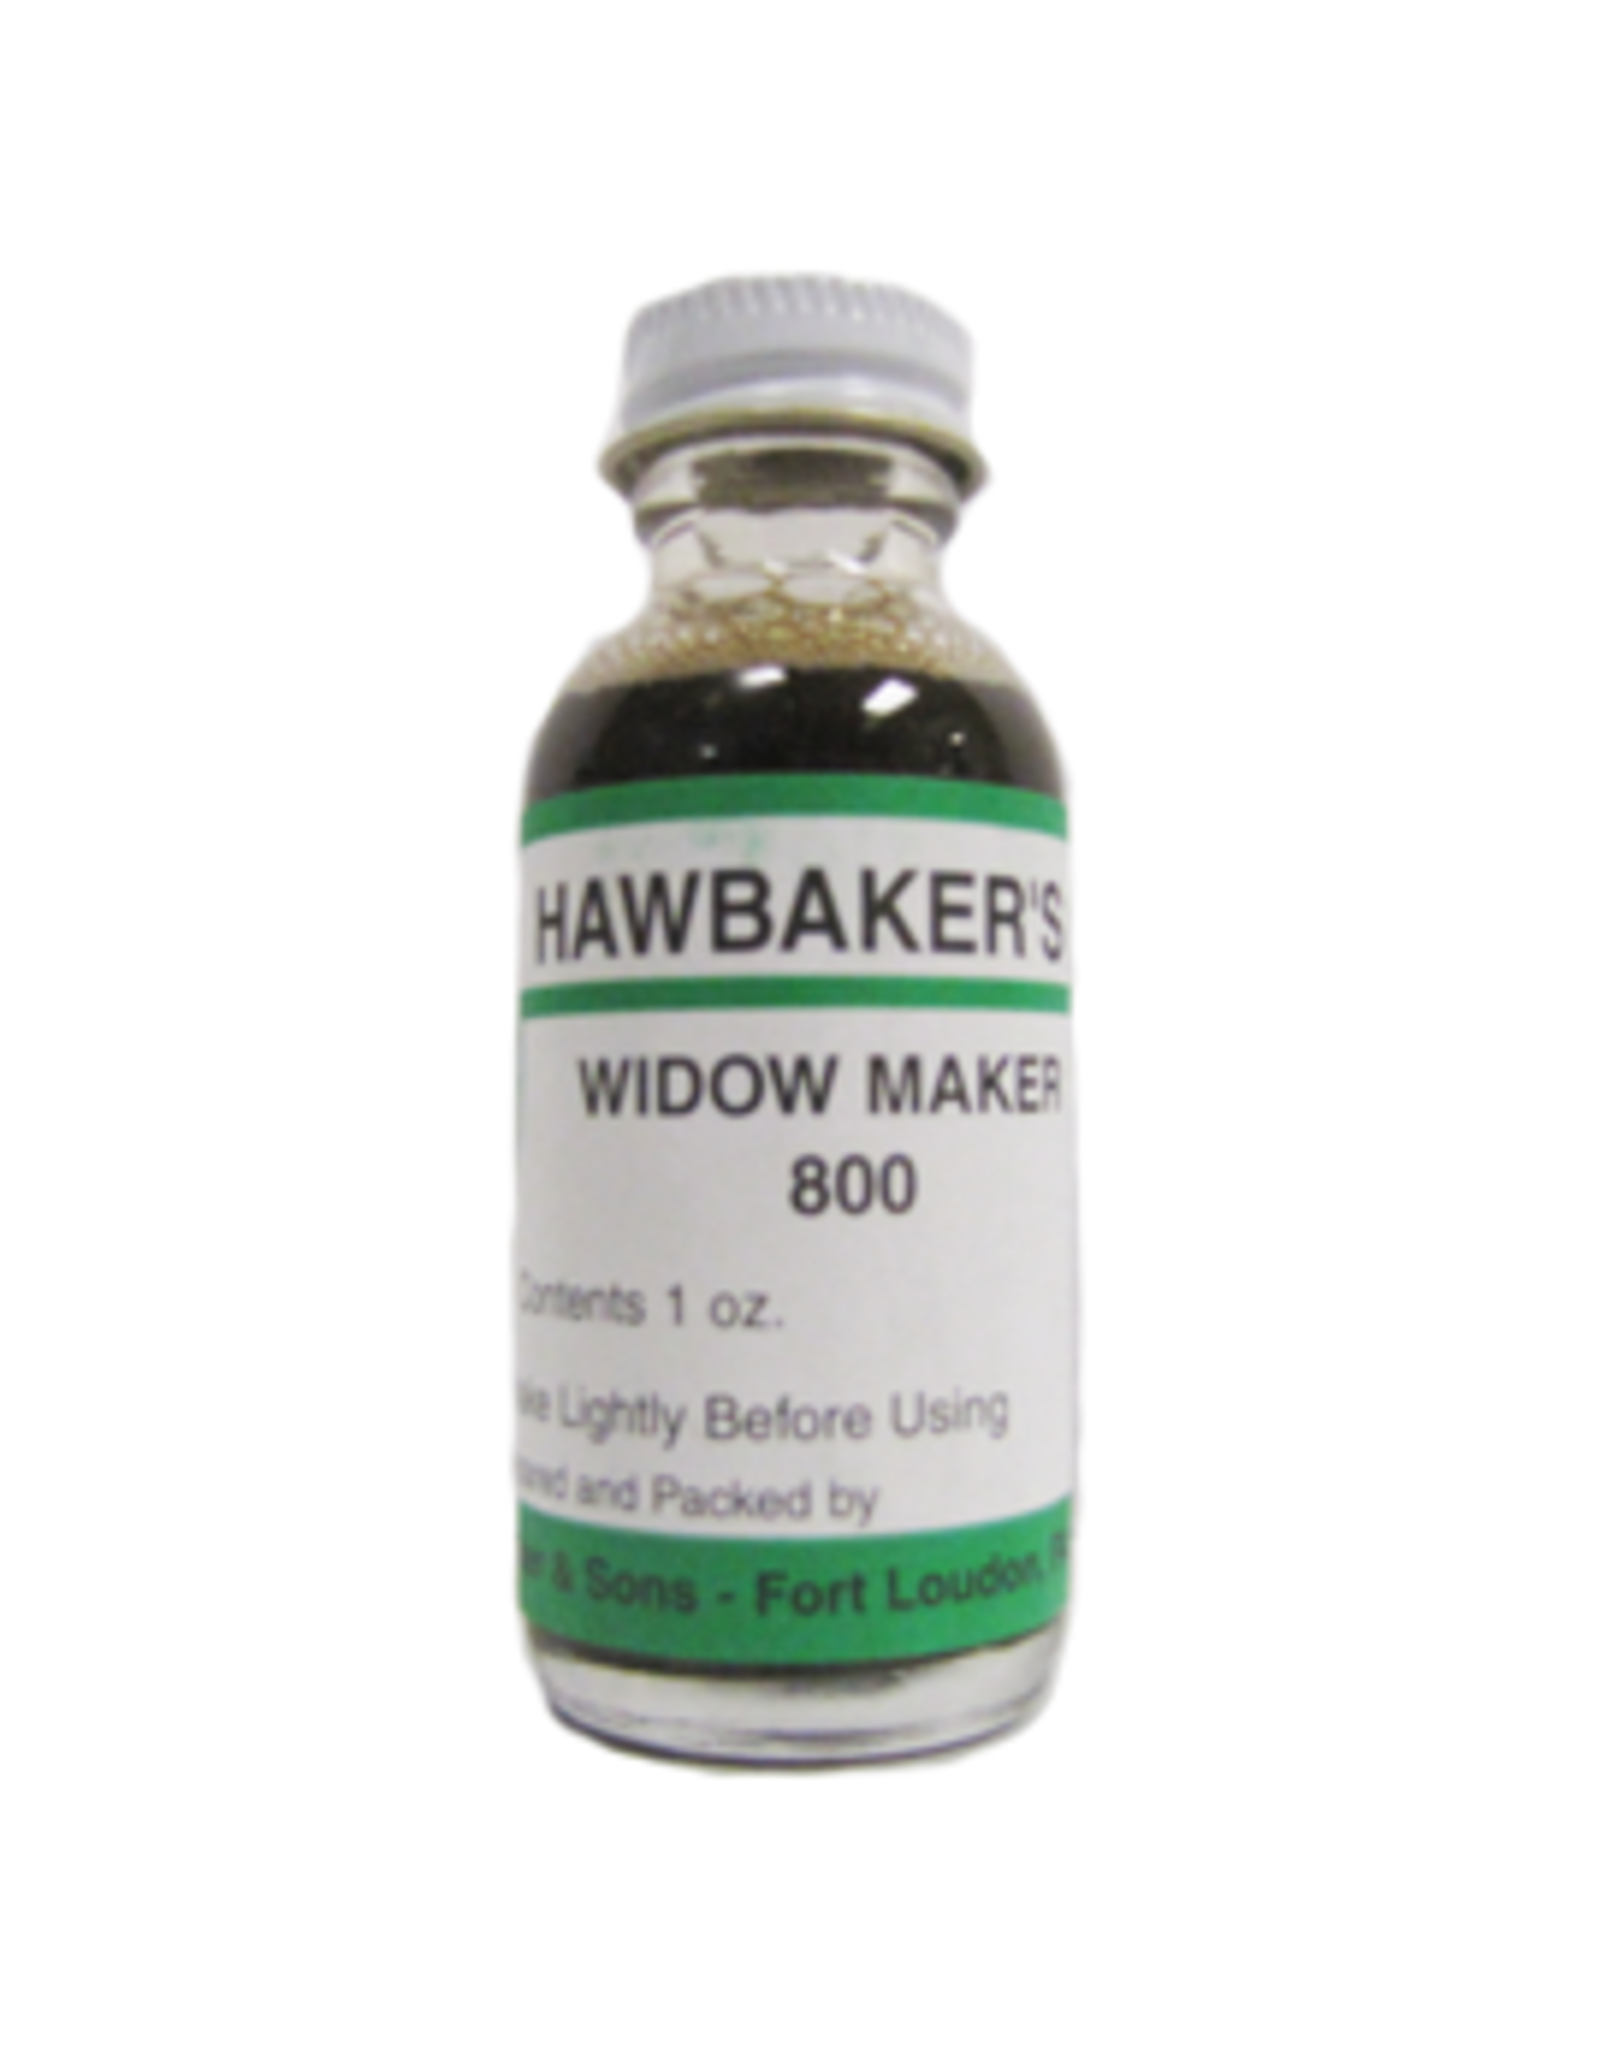 hawbaker's Hawbaker Widow Maker 800